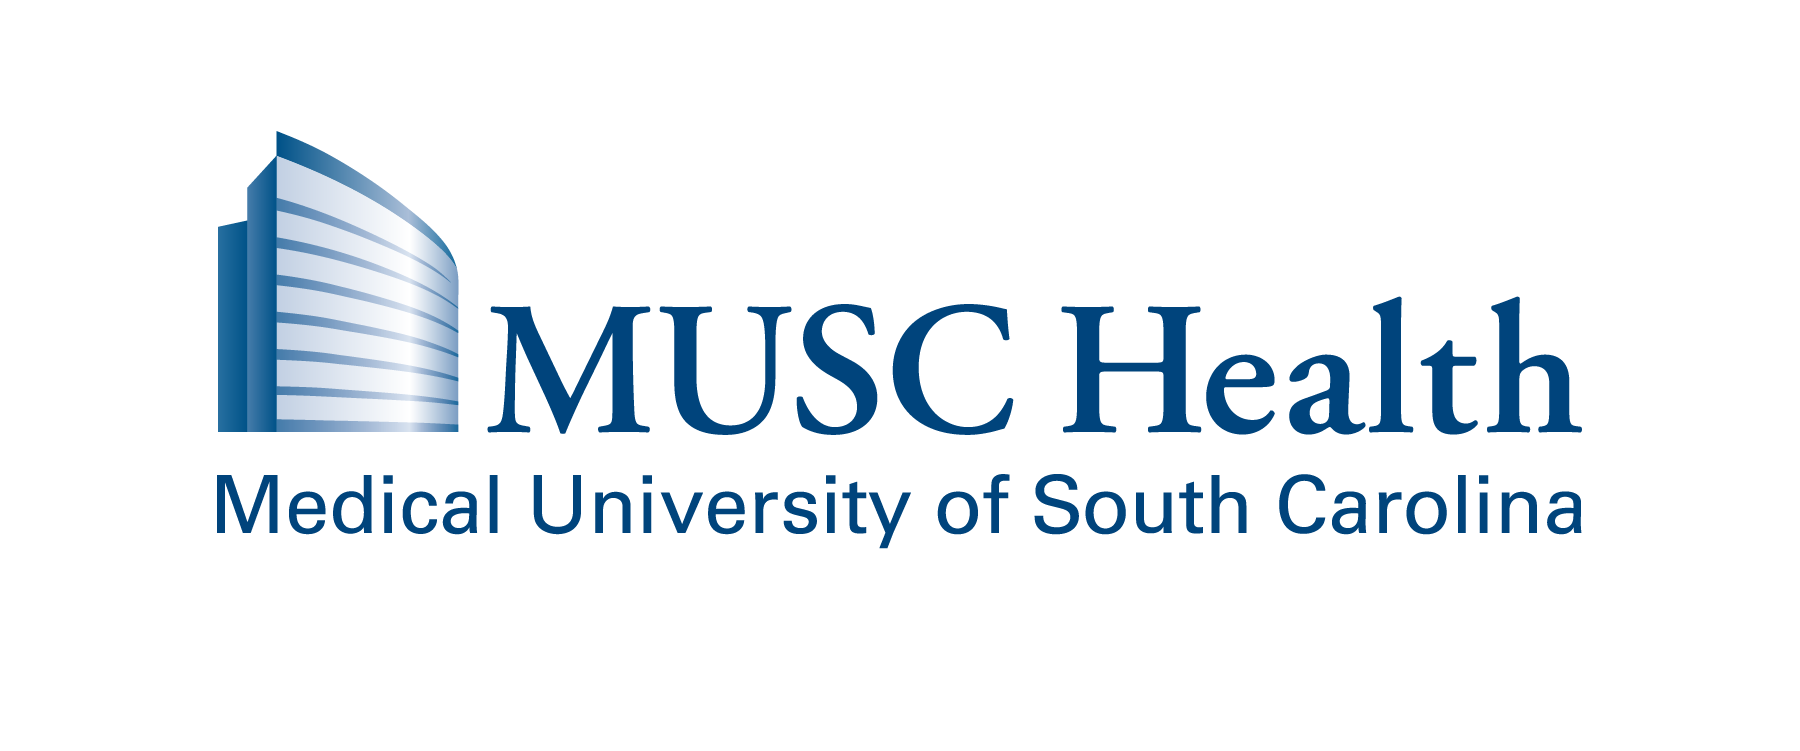 MUSC-logo.png